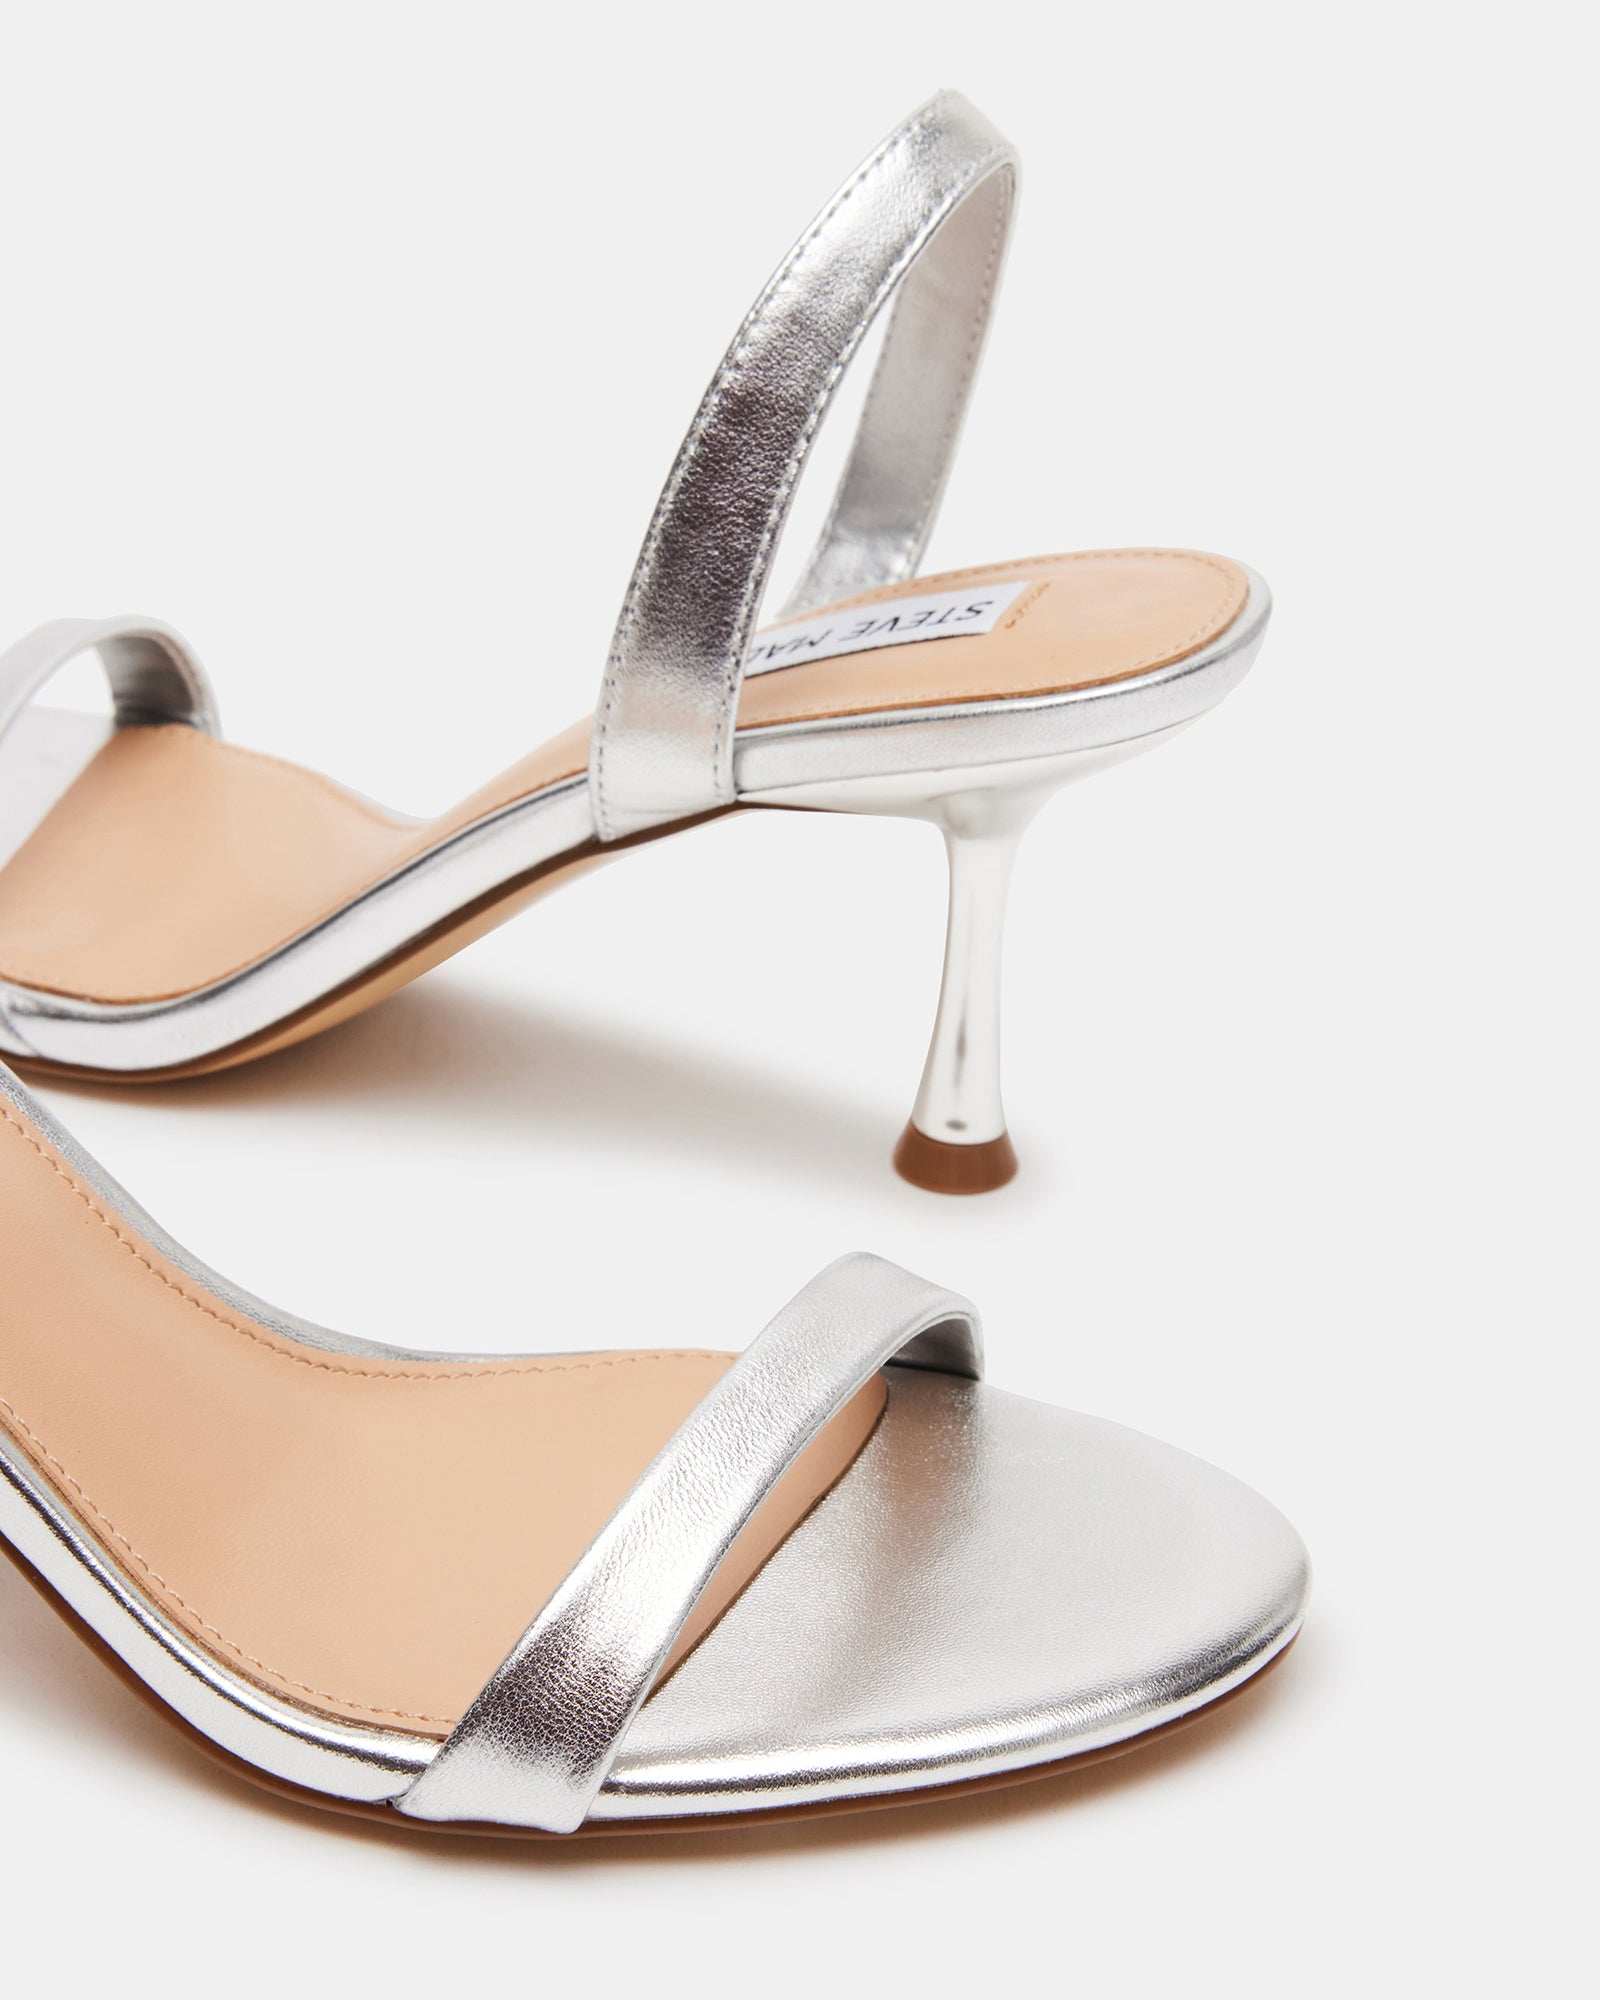 ELMA Silver Leather Slingback Strappy Kitten Heel | Women's Heels ...